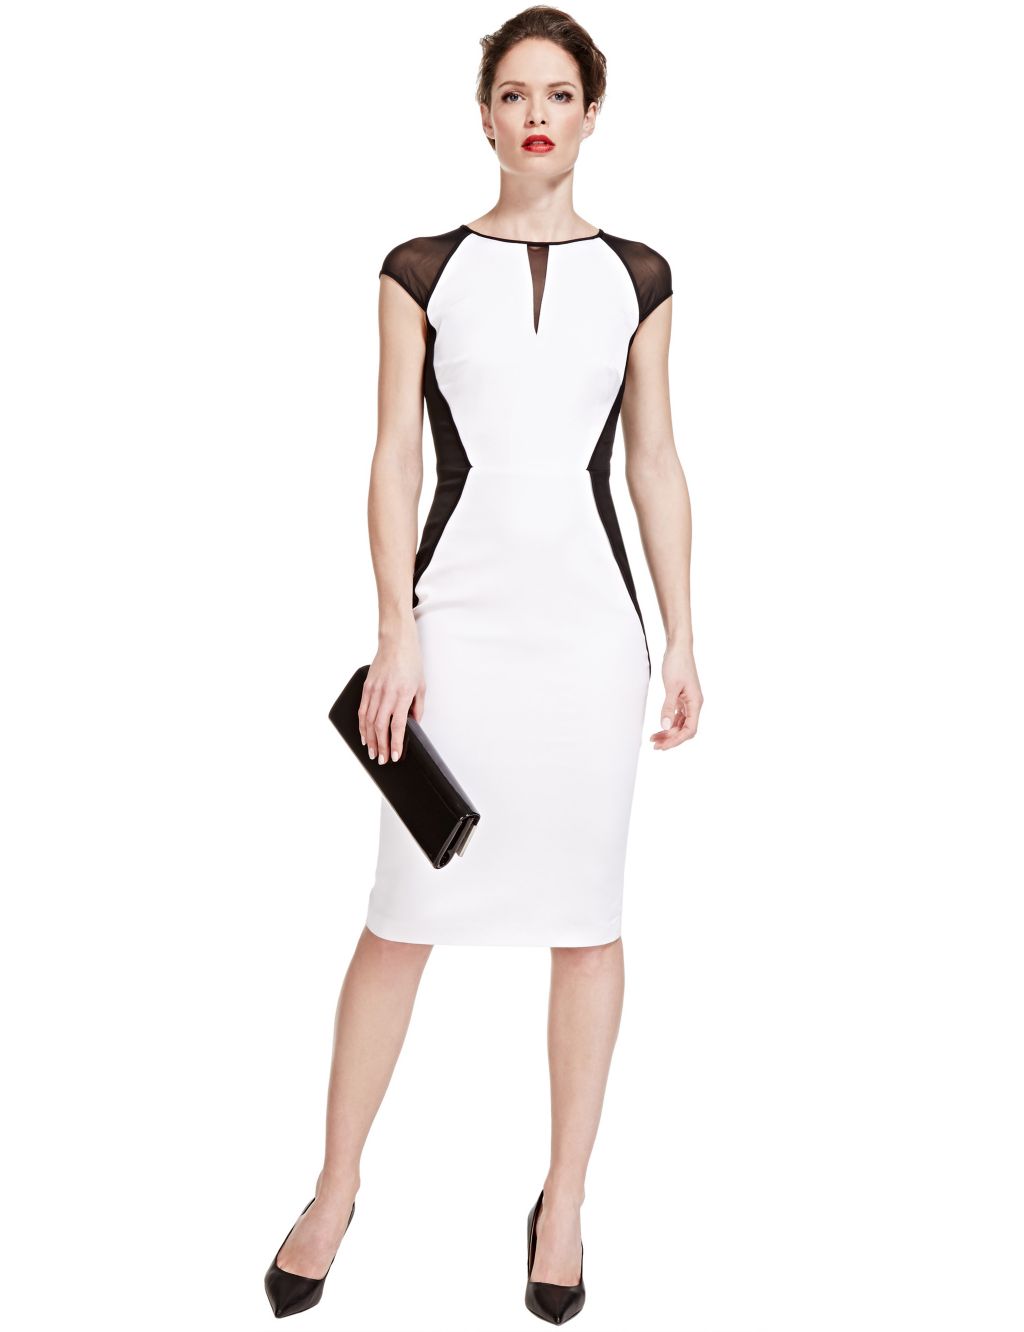 Speziale Colour Block Bodycon Dress with Modal | Per Una | M&S